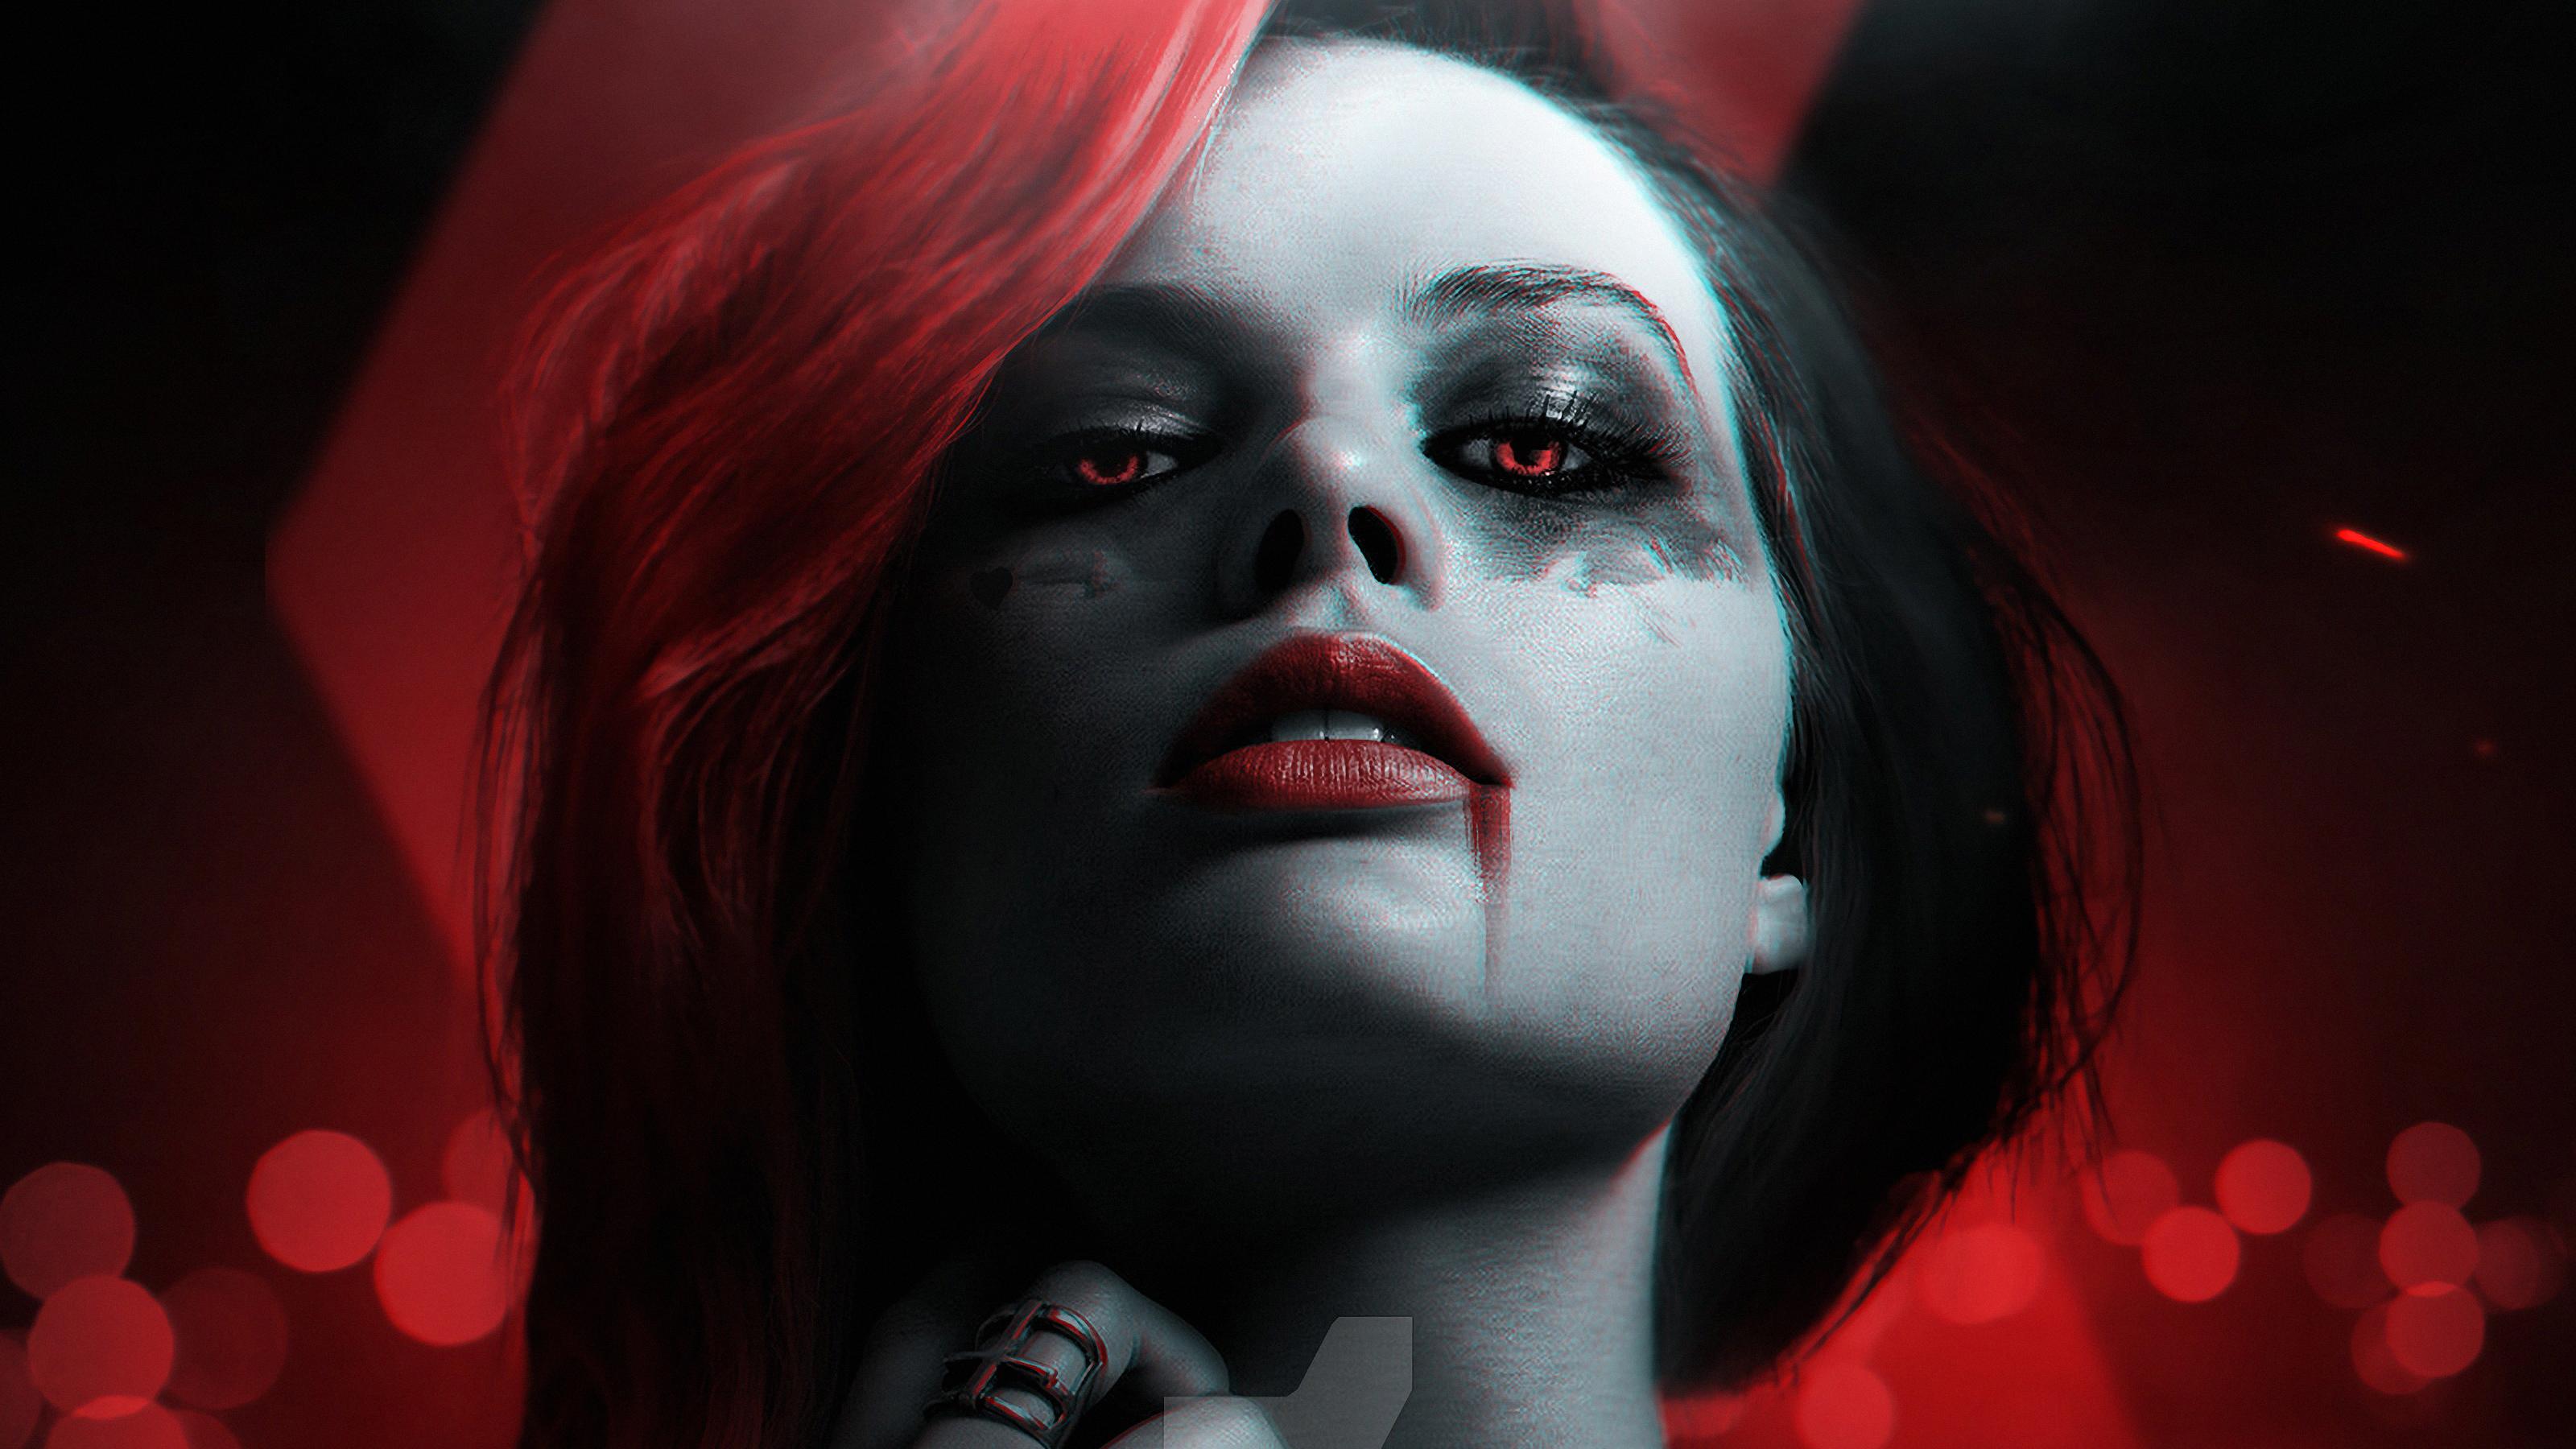 3200 x 1800 · jpeg - Harley Quinn Margot Robbie, HD Superheroes, 4k Wallpapers, Images ...